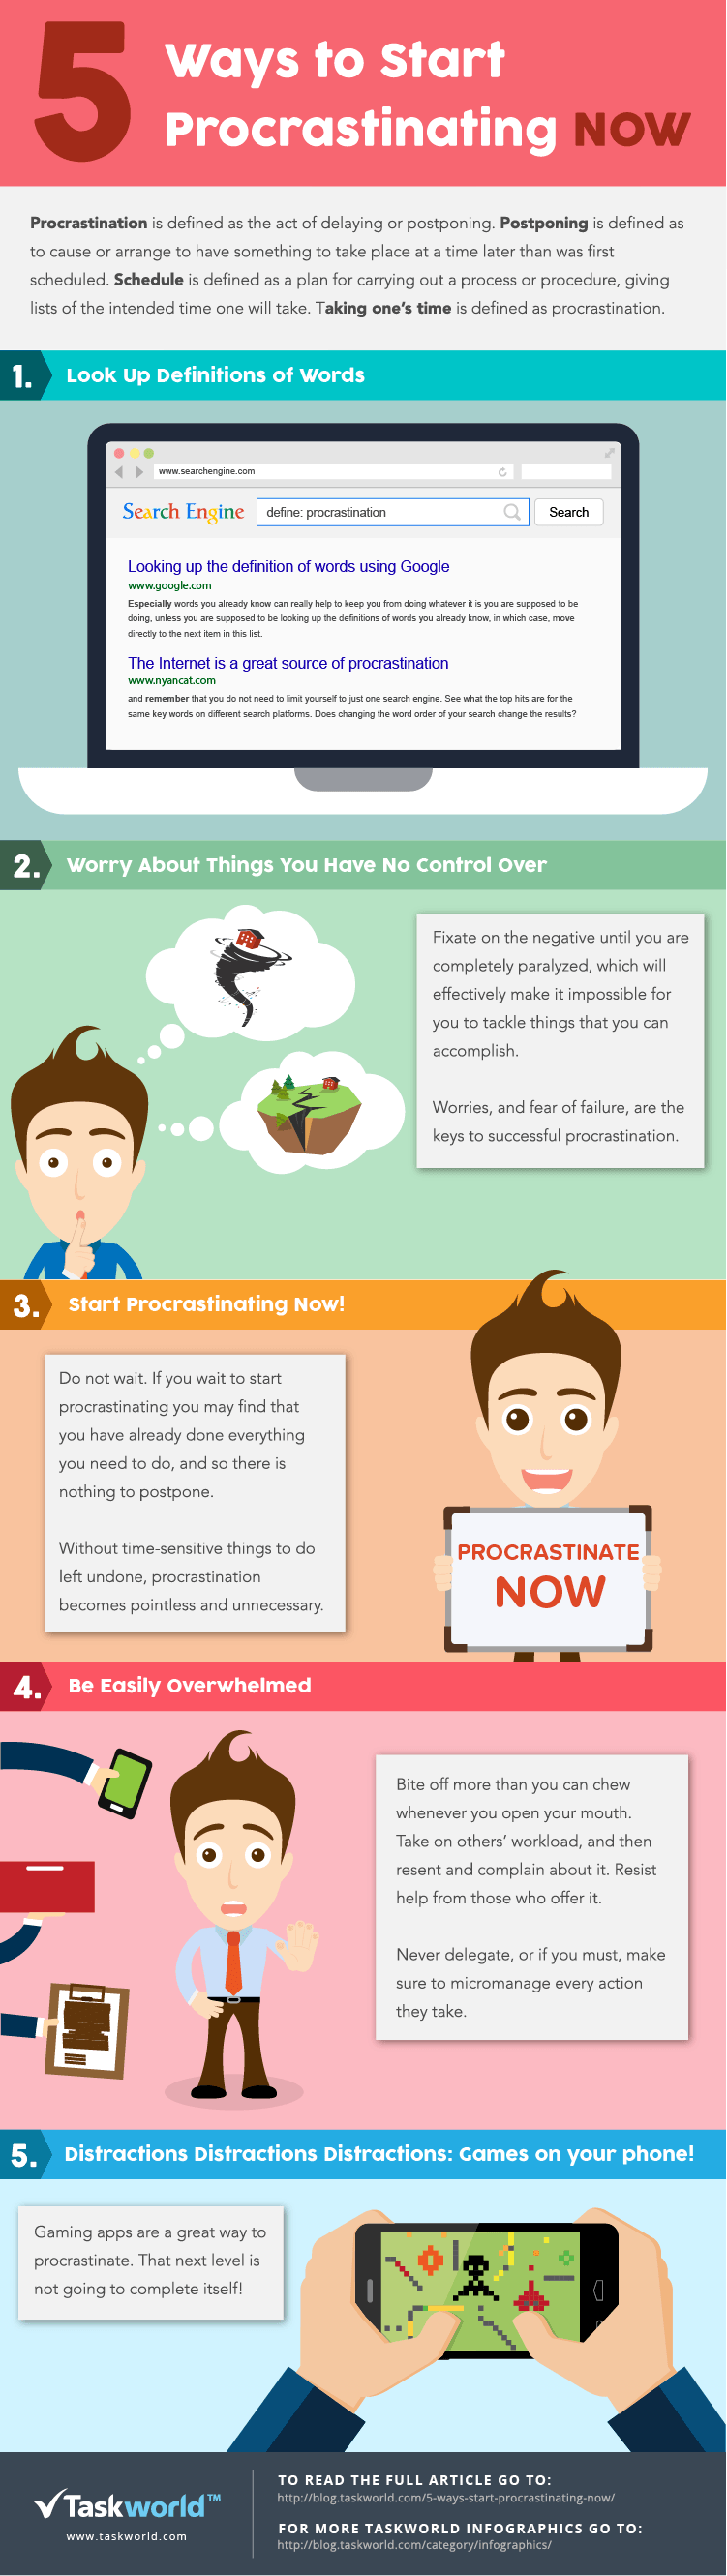 5 Ways to Procrastinating Now Infographic